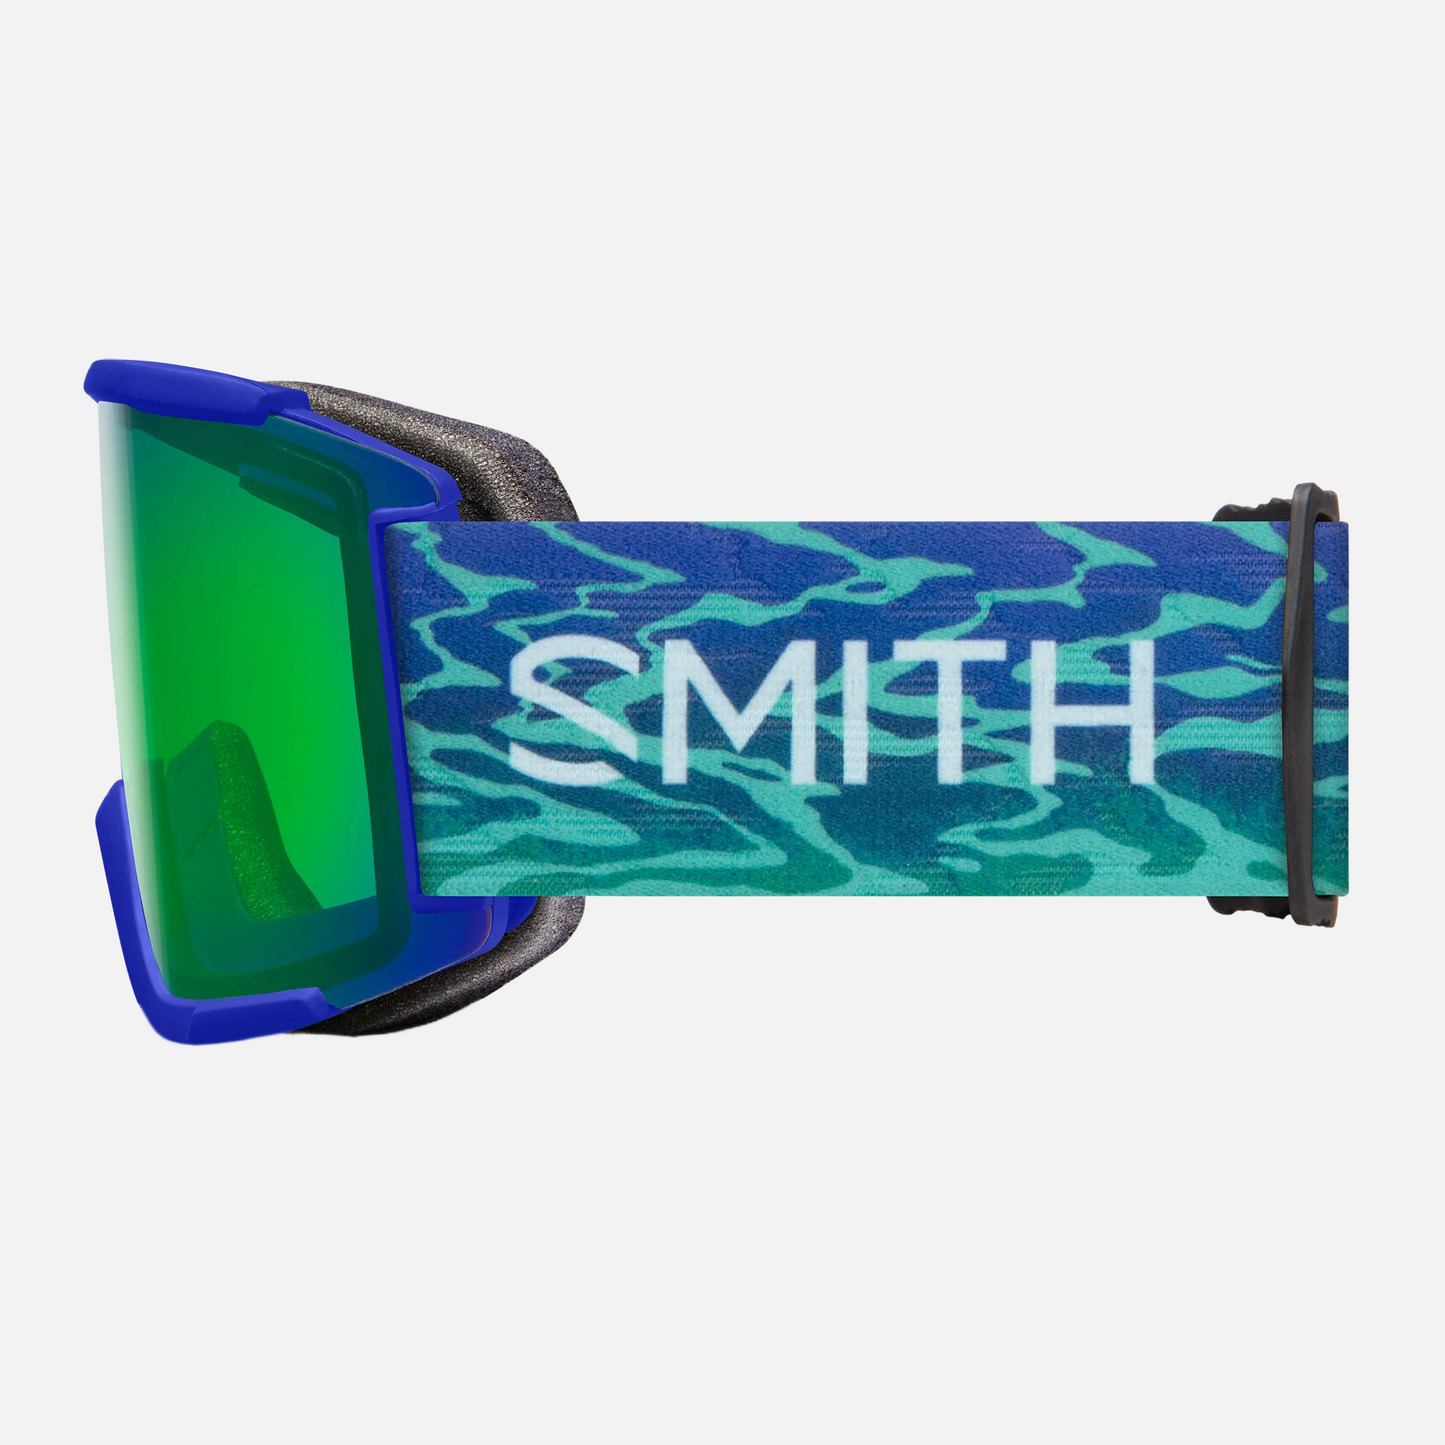 SMITH Squad XL Goggle